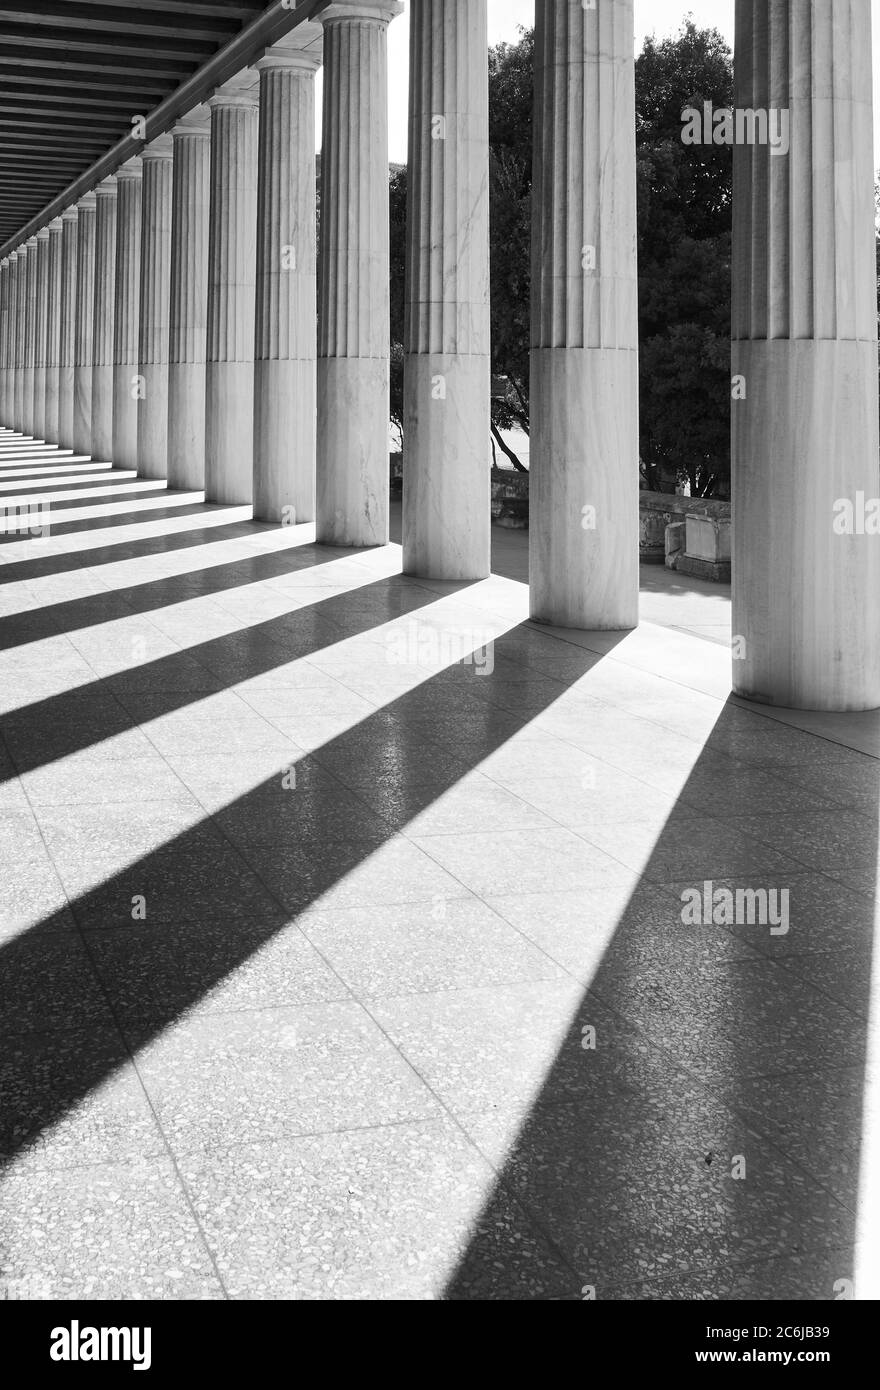 Prospettiva delle colonne greche classiche, Atene, Grecia. Fotografia architettonica in bianco e nero Foto Stock